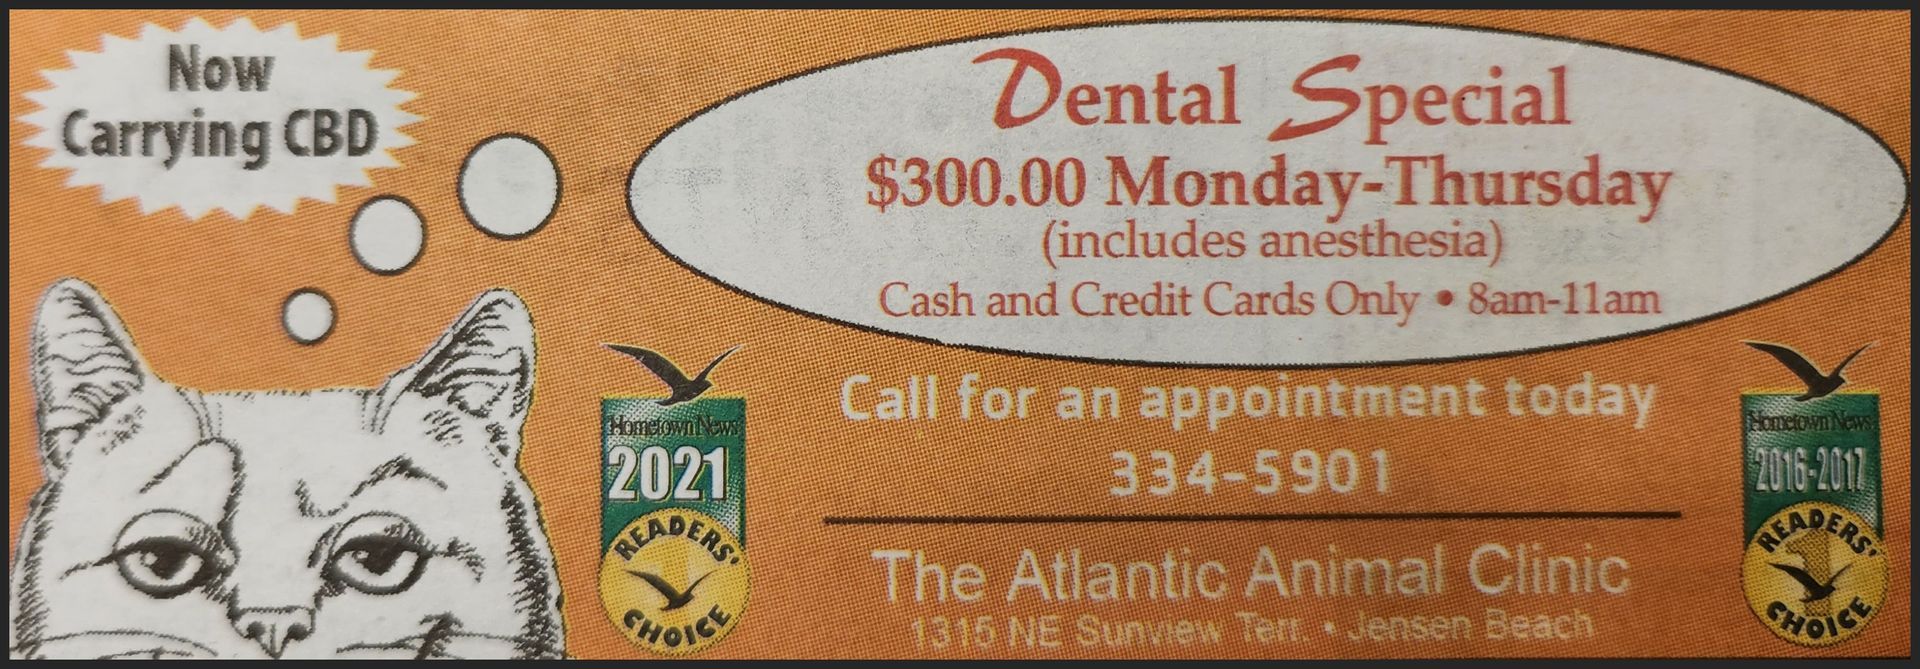 $300 Dental Special